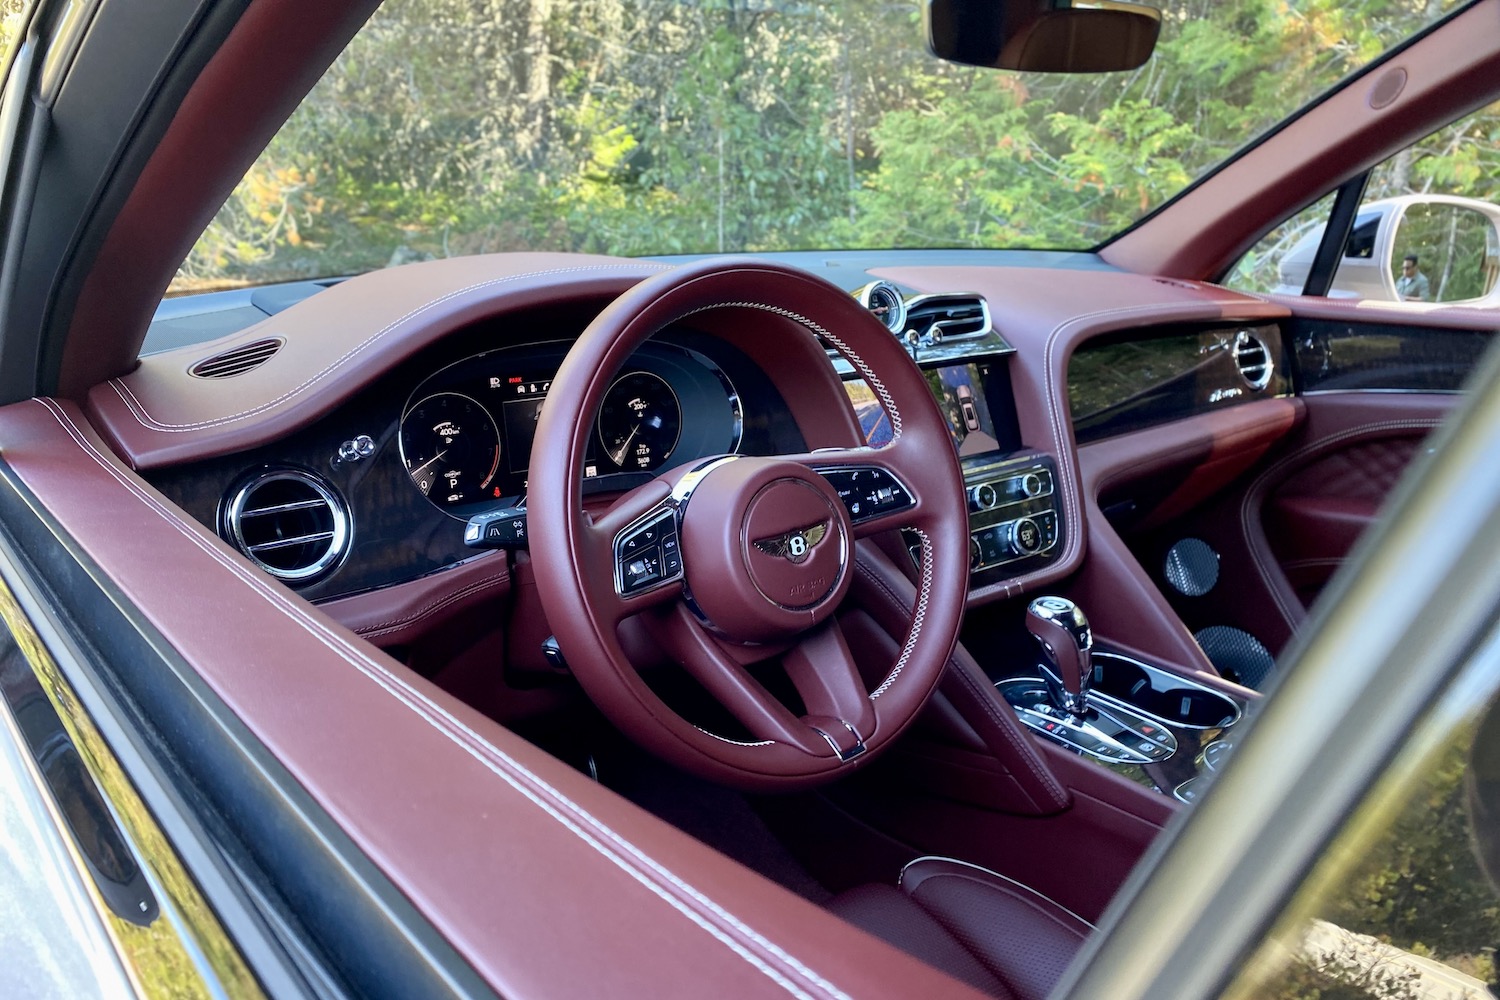 2023 Bentley Bentayga EWB steering wheel and dashboard in 2023 Bentley Bentayga EWB from outside the SUV.